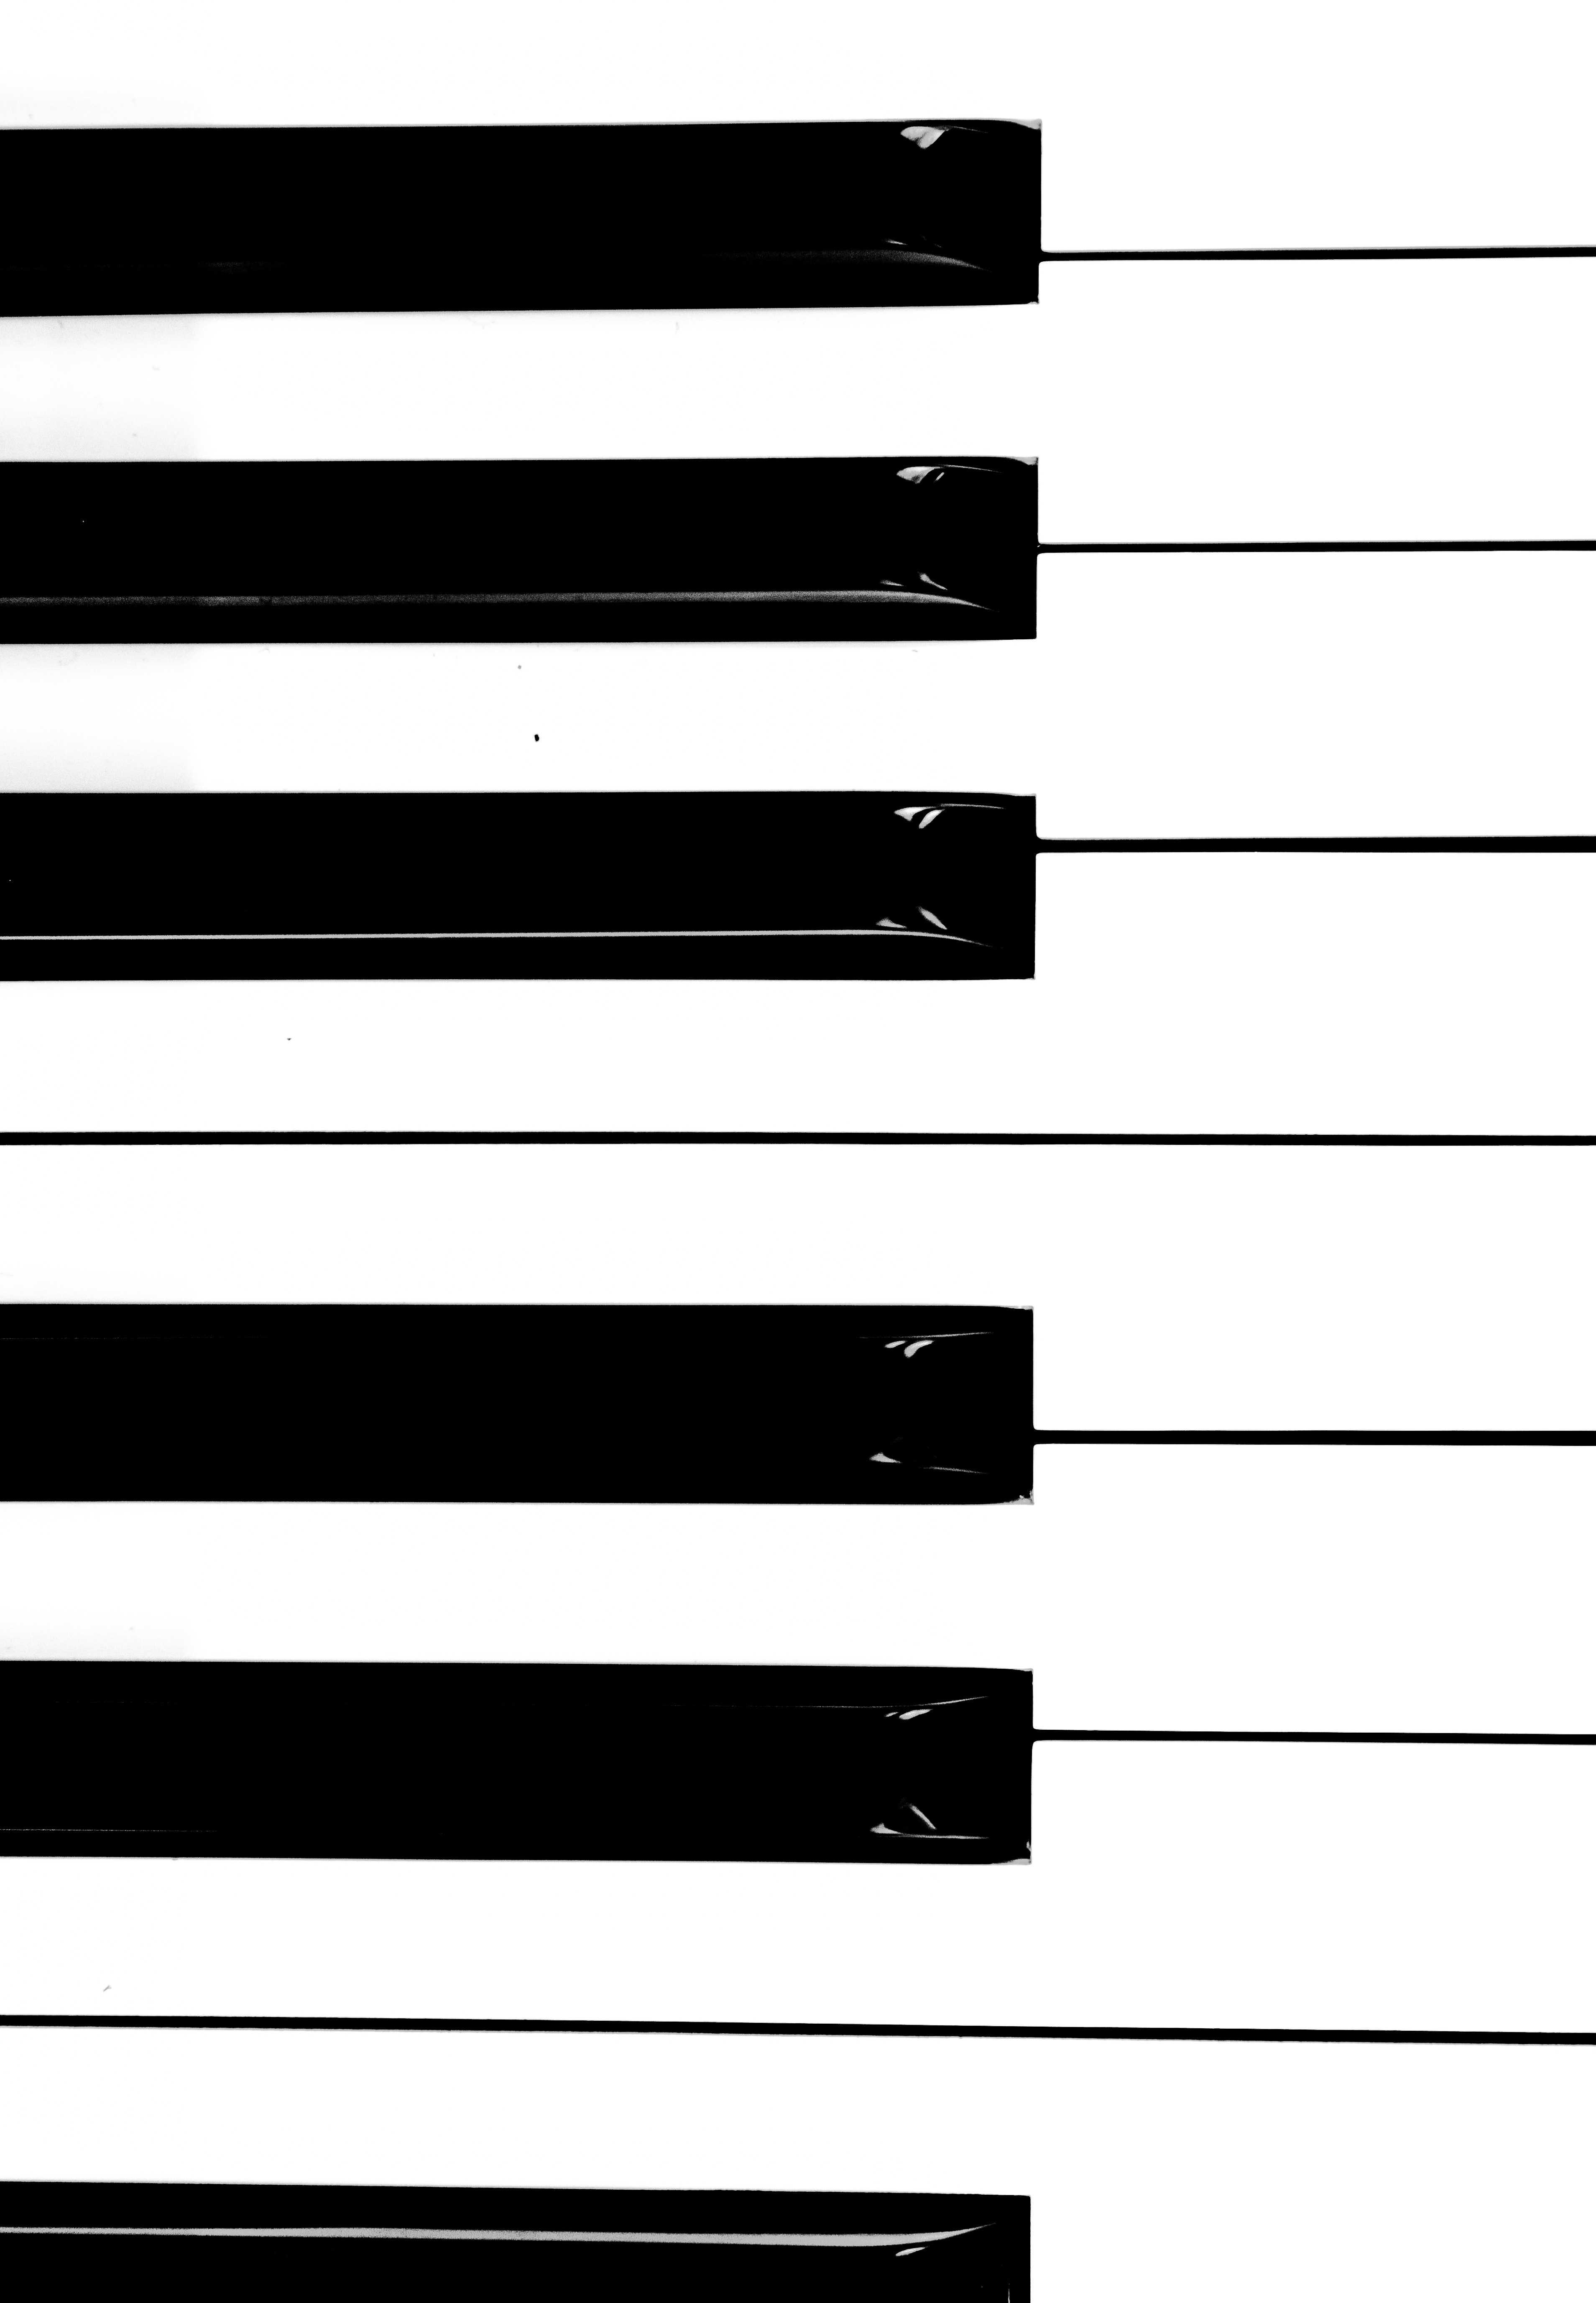 minimalism, bw, music, piano, musical instrument, chb, keys